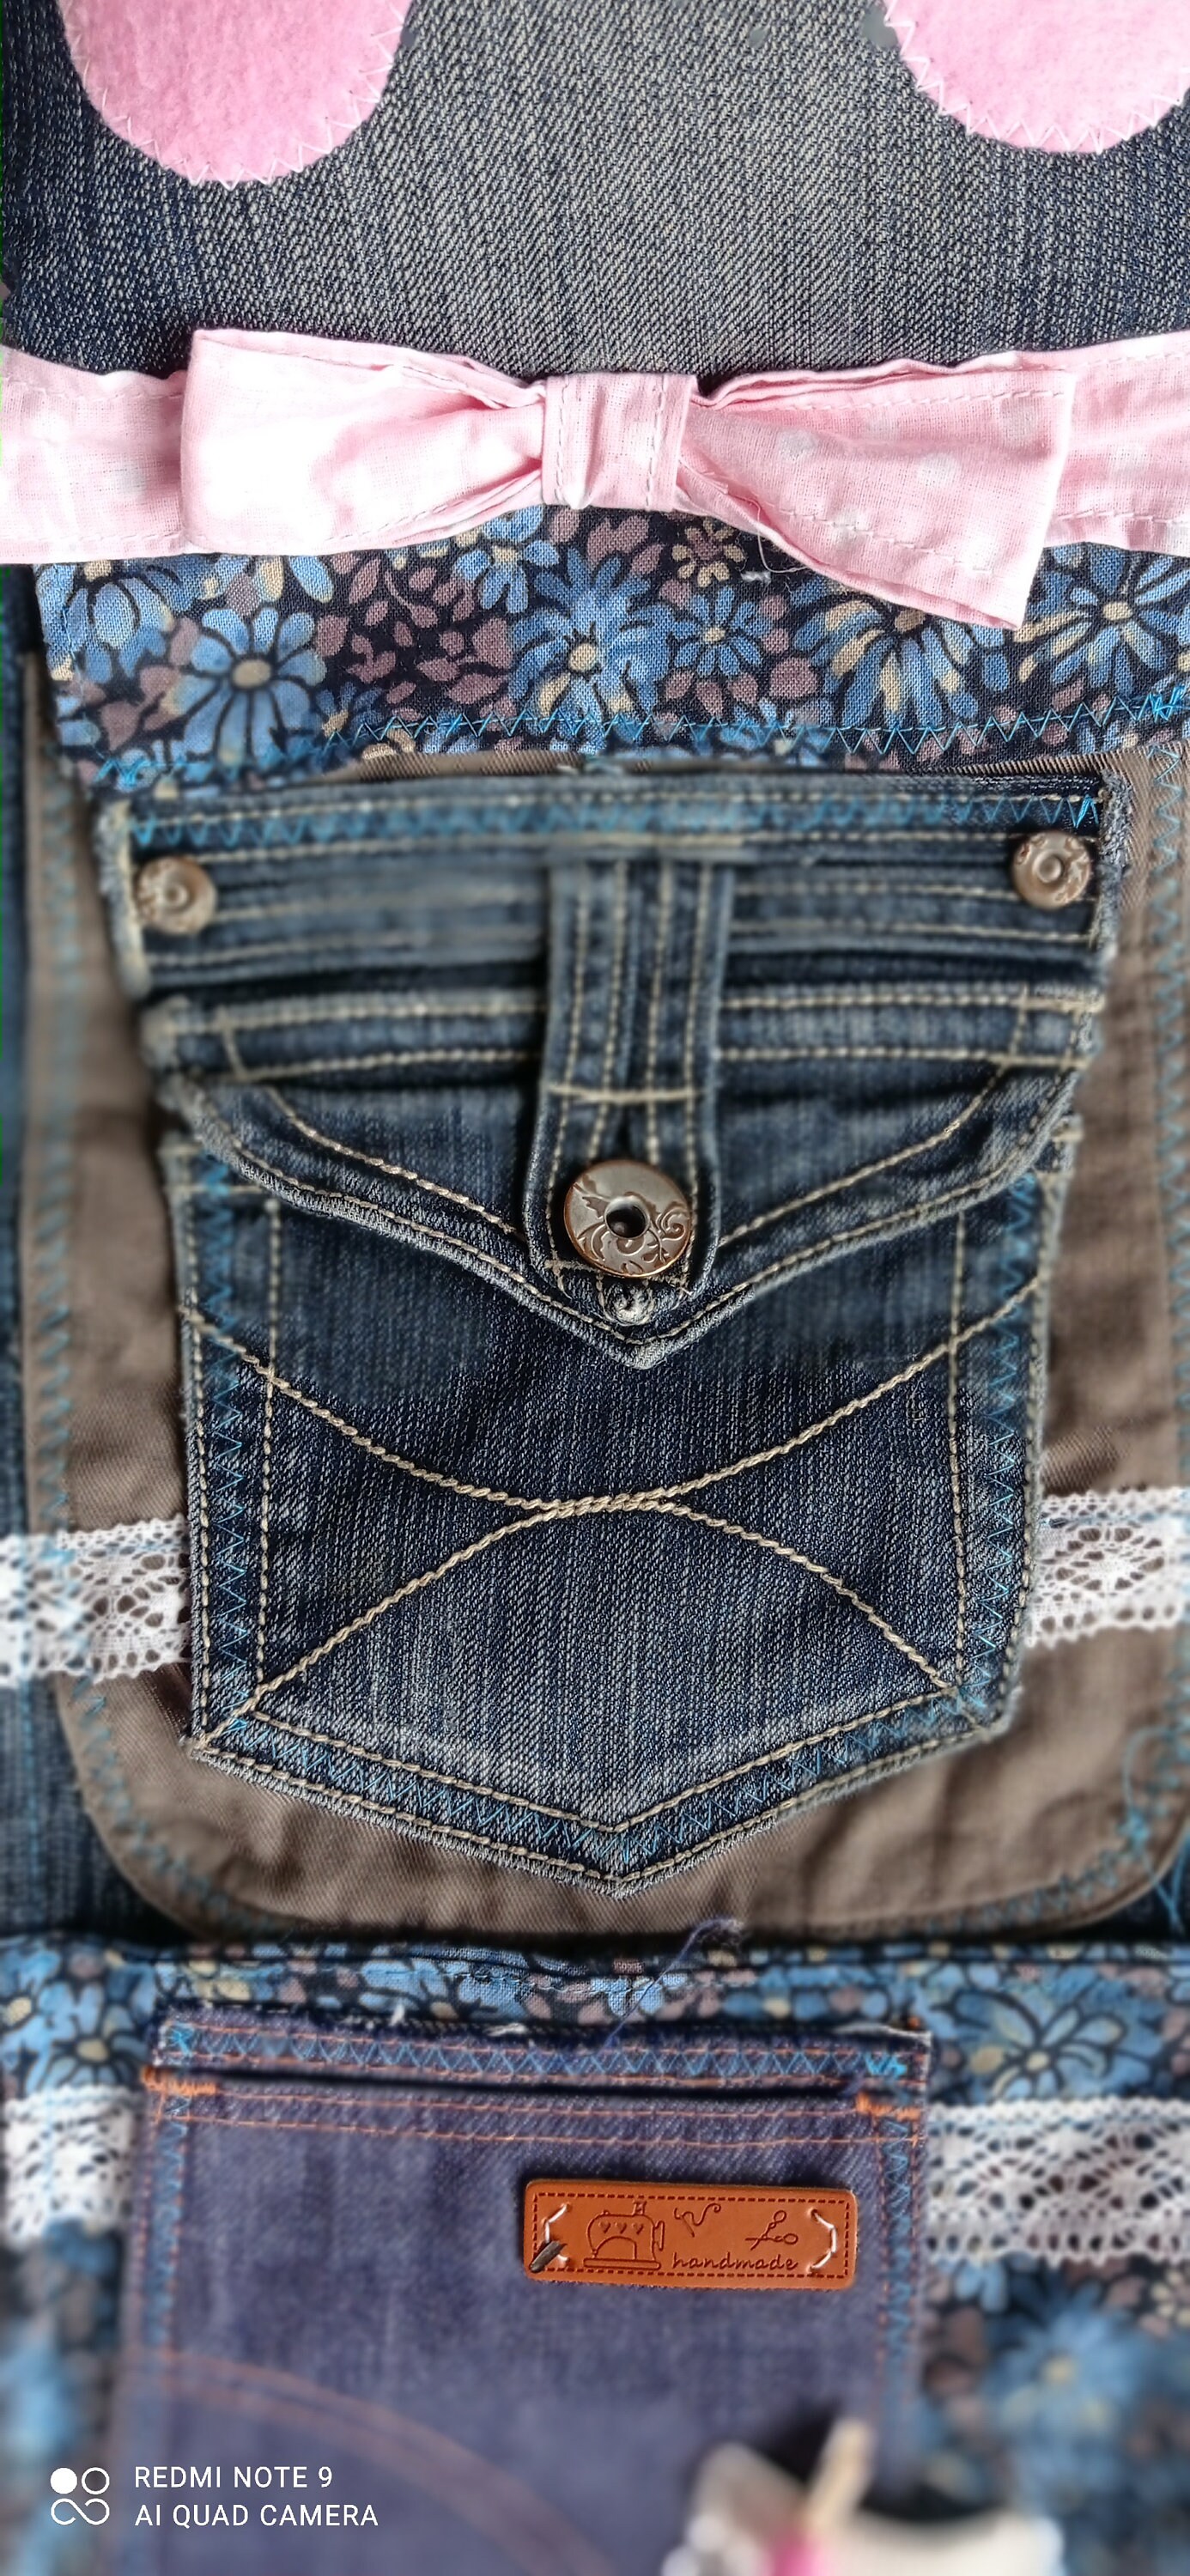 Porta oggetti da parete in jeans: idea regalo e arredamento -  Genitorialmente